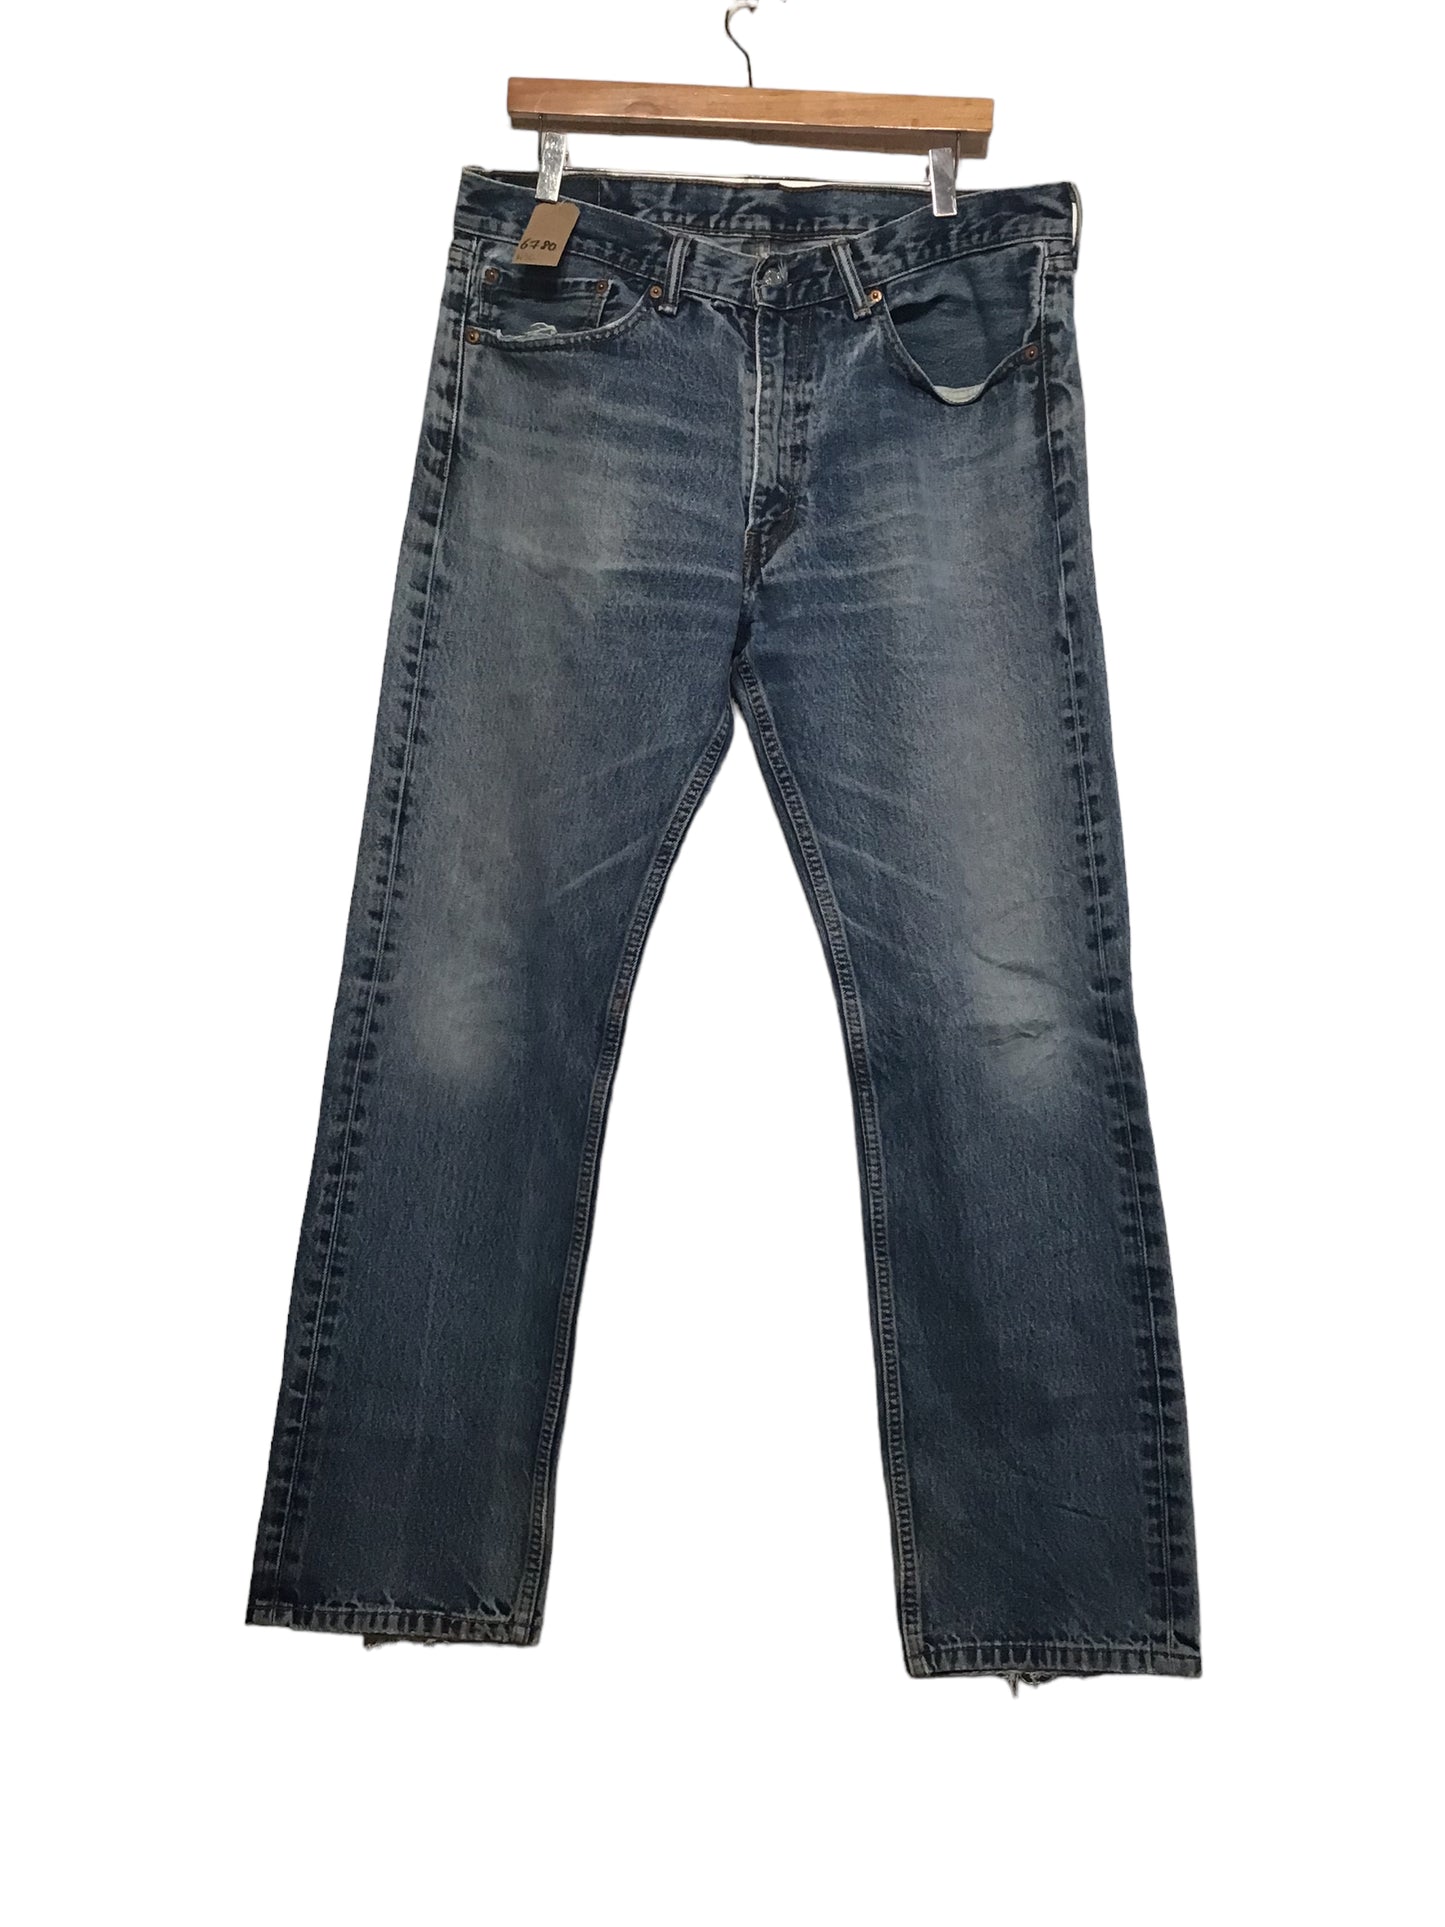 Levi 505 Jeans (36x32)